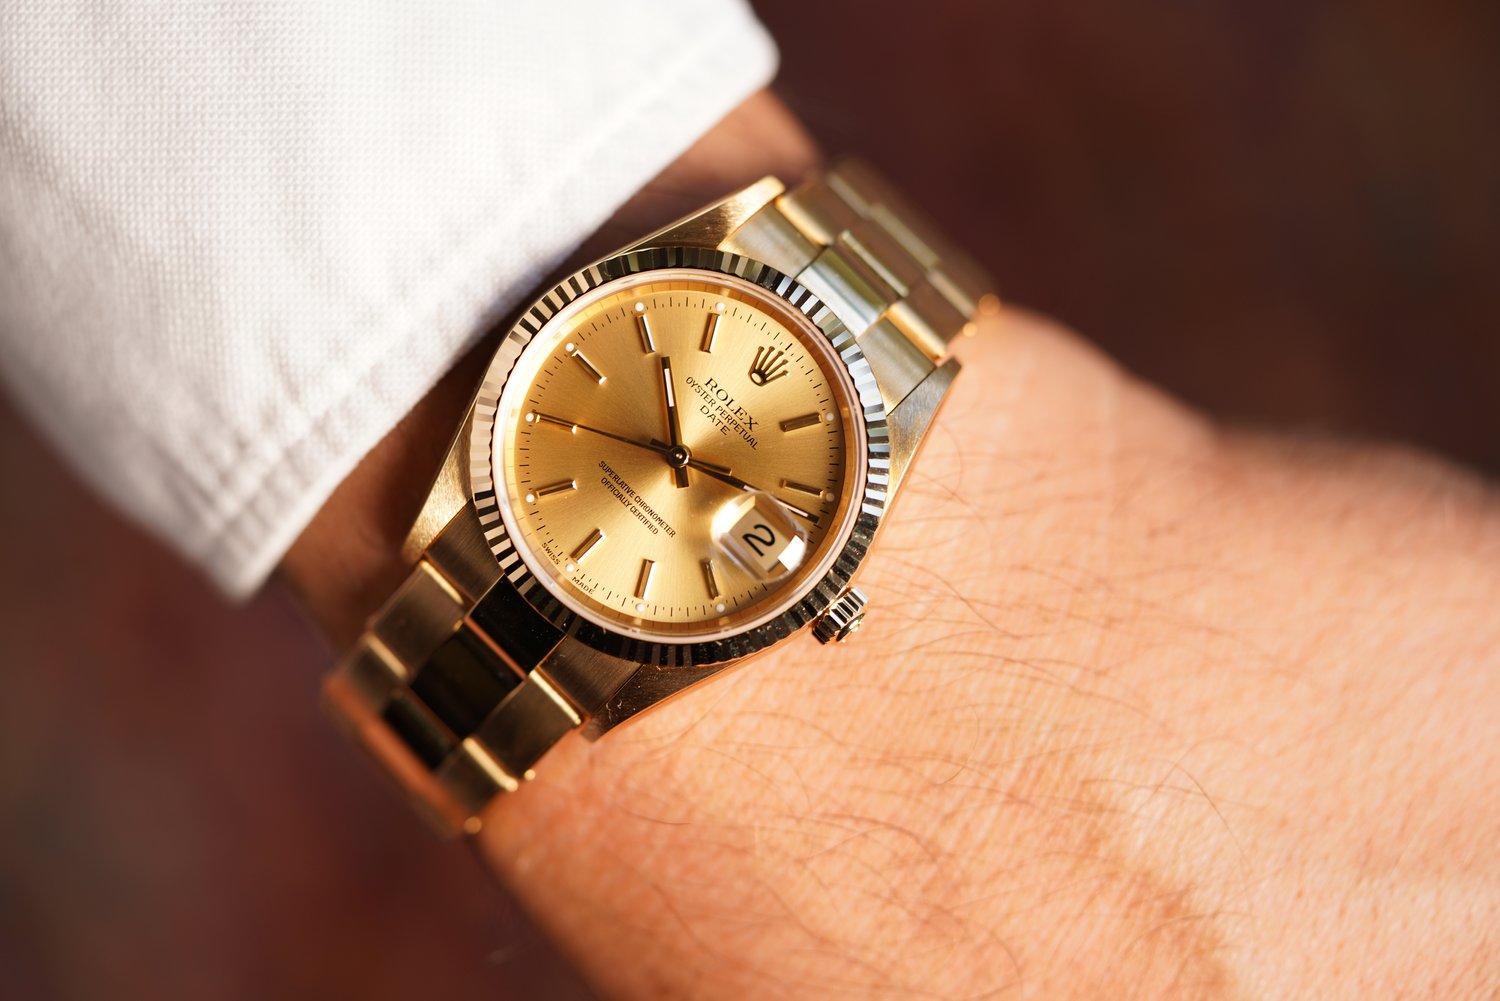 Rolex Date “NOS” Reference 15238 in 18K Gold “Full Set” — Wind Vintage